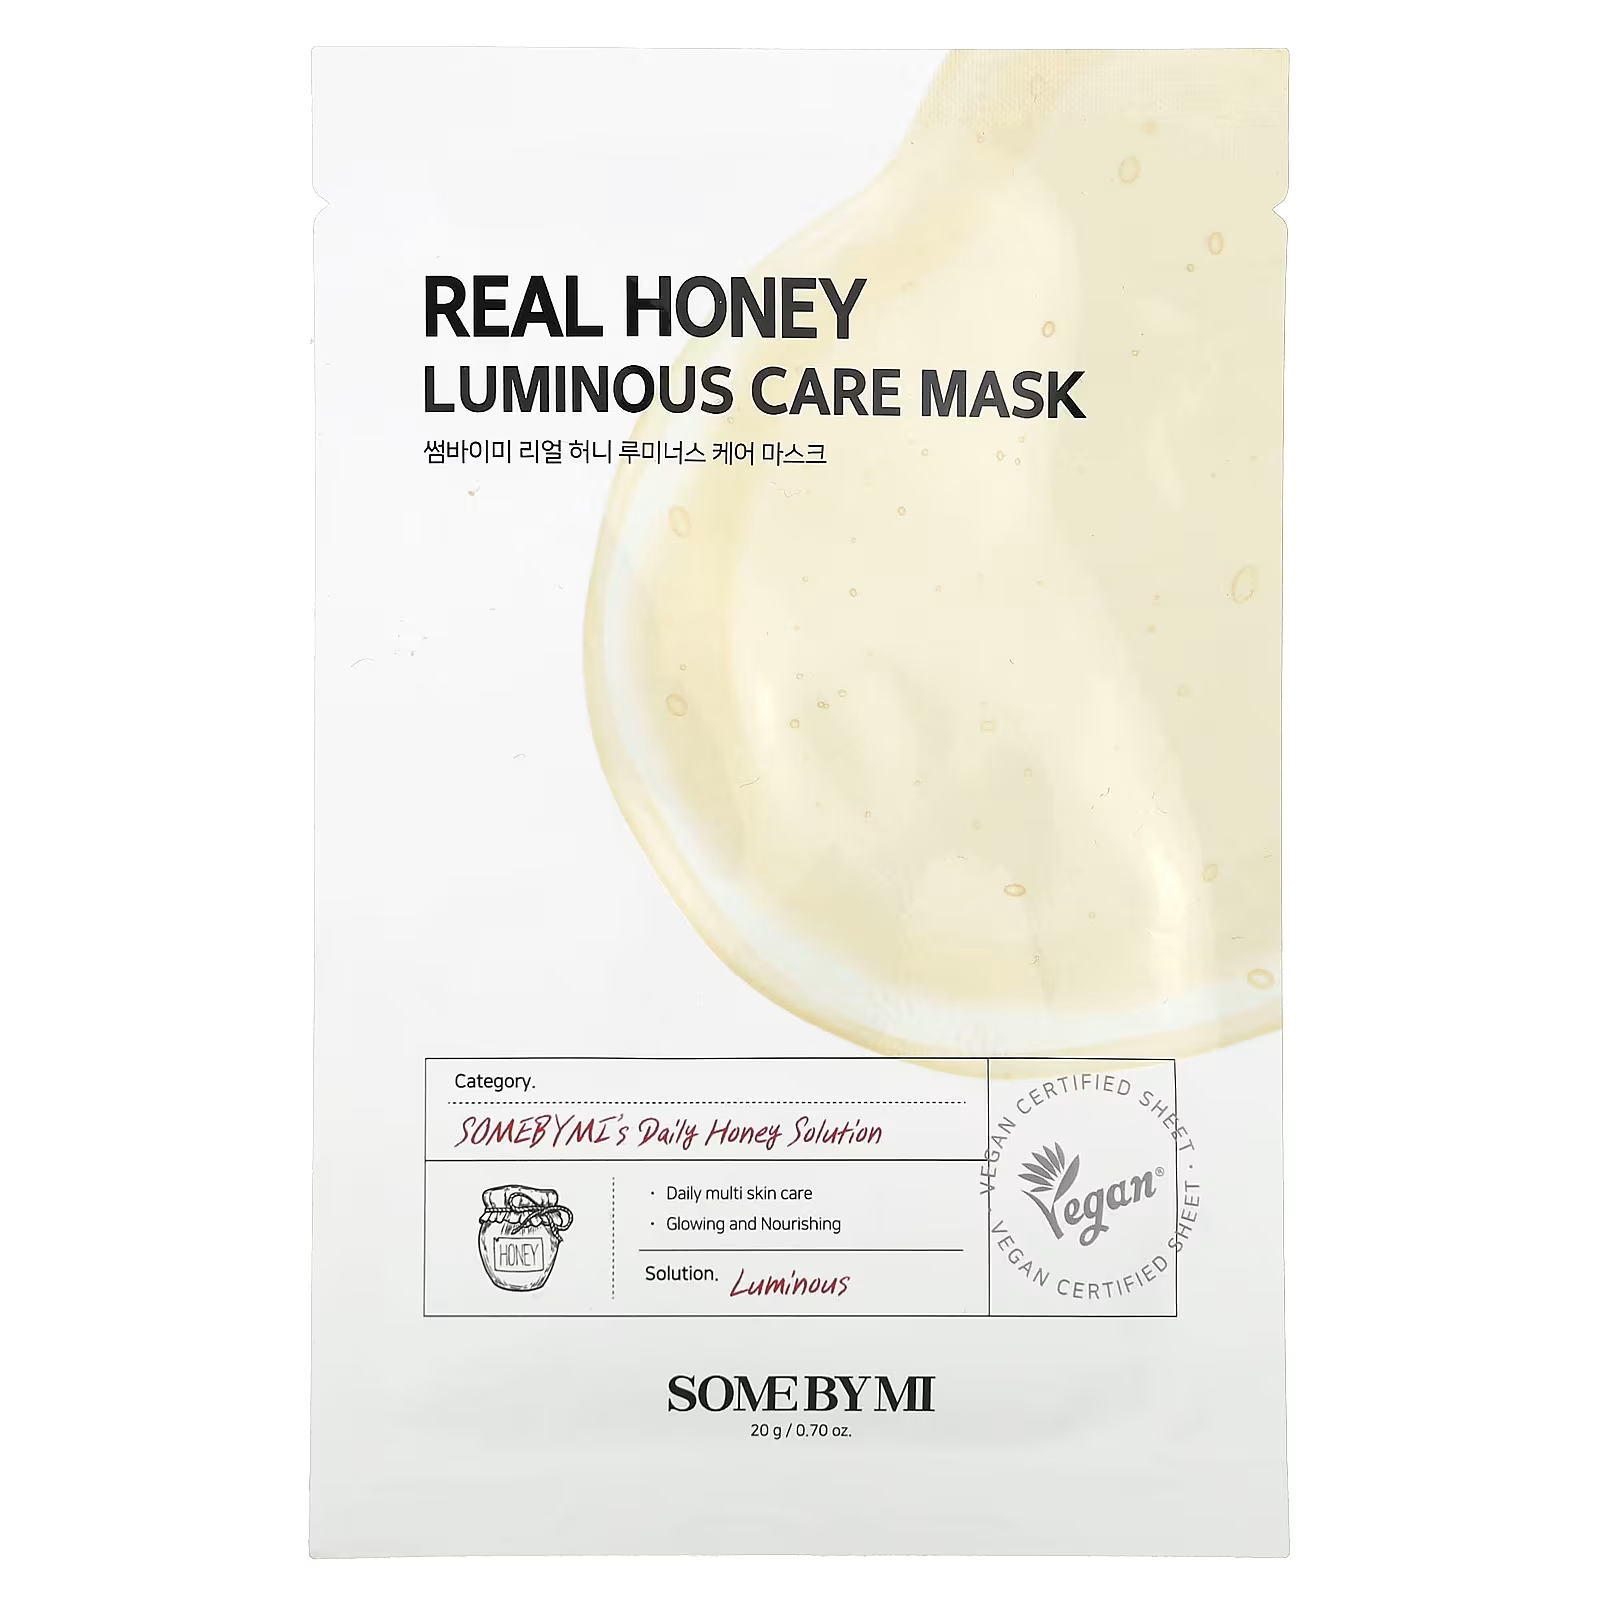 Косметическая маска SOME BY MI Real Honey Luminous Care, 1 лист, 0,70 унции (20 г) some by mi real honey косметическая маска для сияния кожи 1 шт 20 г 0 7 унции